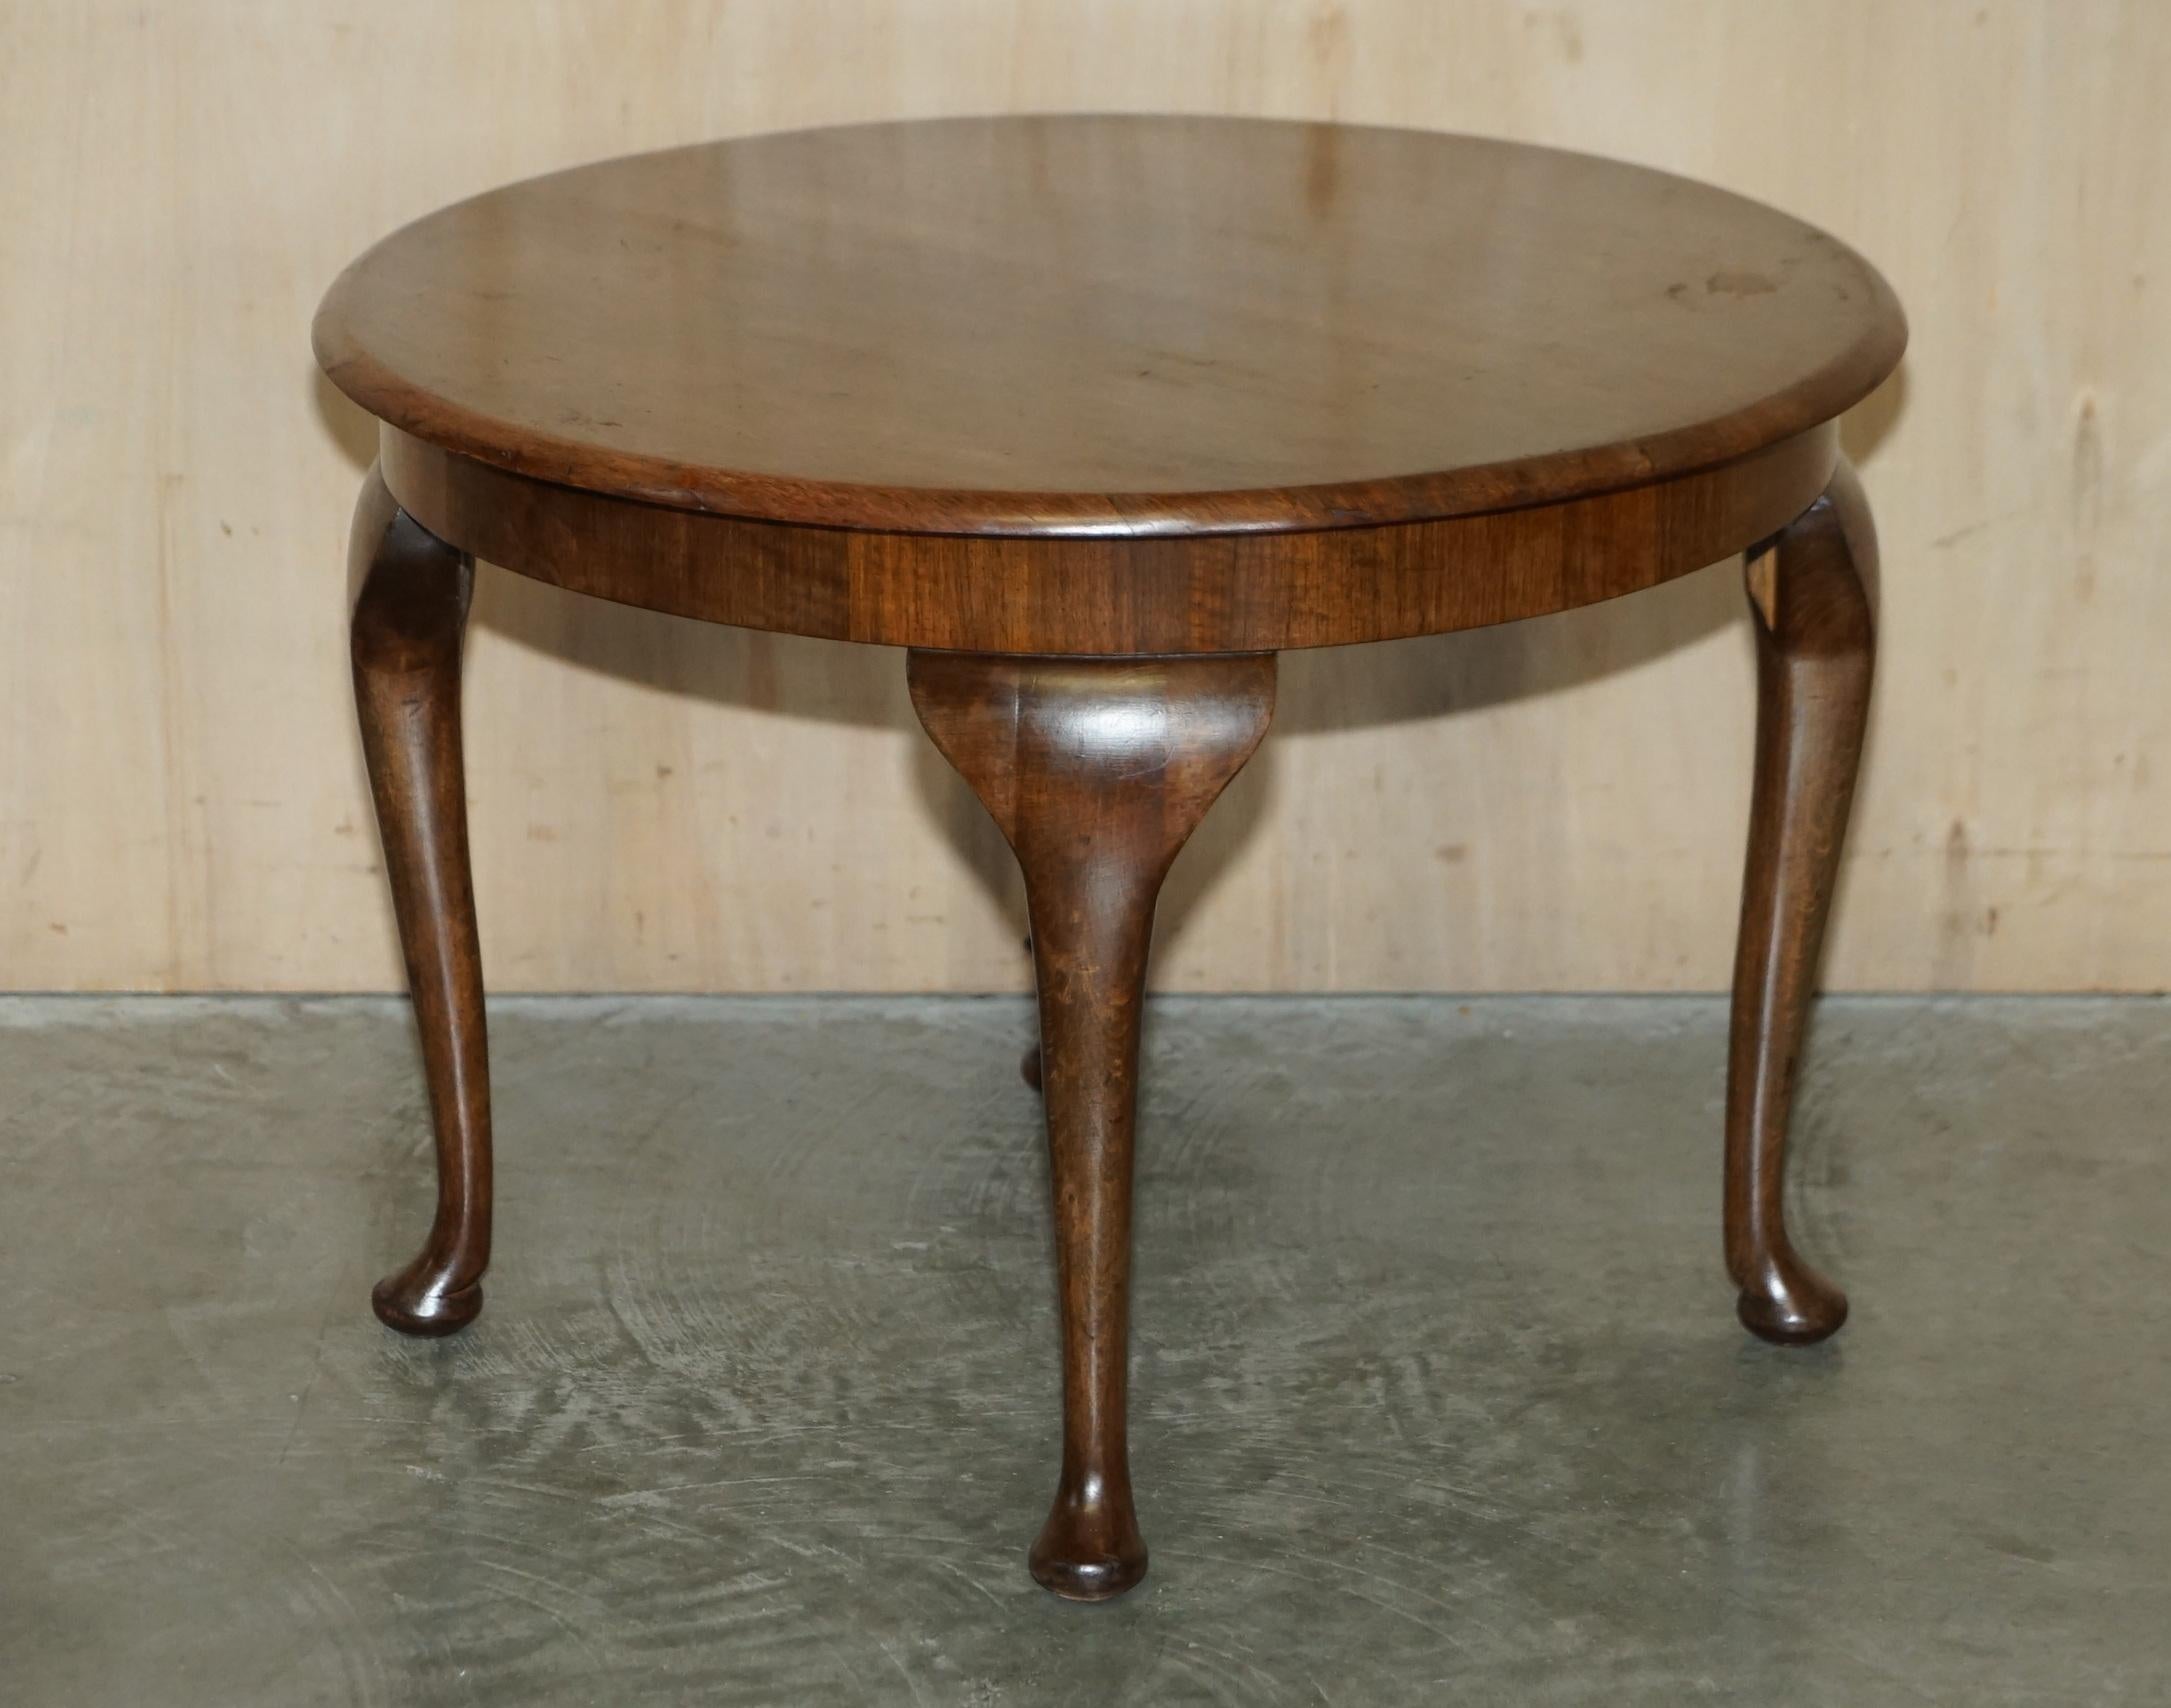 Nous avons le plaisir de proposer à la vente cette belle table basse en chêne anglais sculptée à la main, datant de 1930. 

Une belle table basse anglaise bien faite avec de beaux pieds cabriolets.

En ce qui concerne l'état, il a bien vieilli,